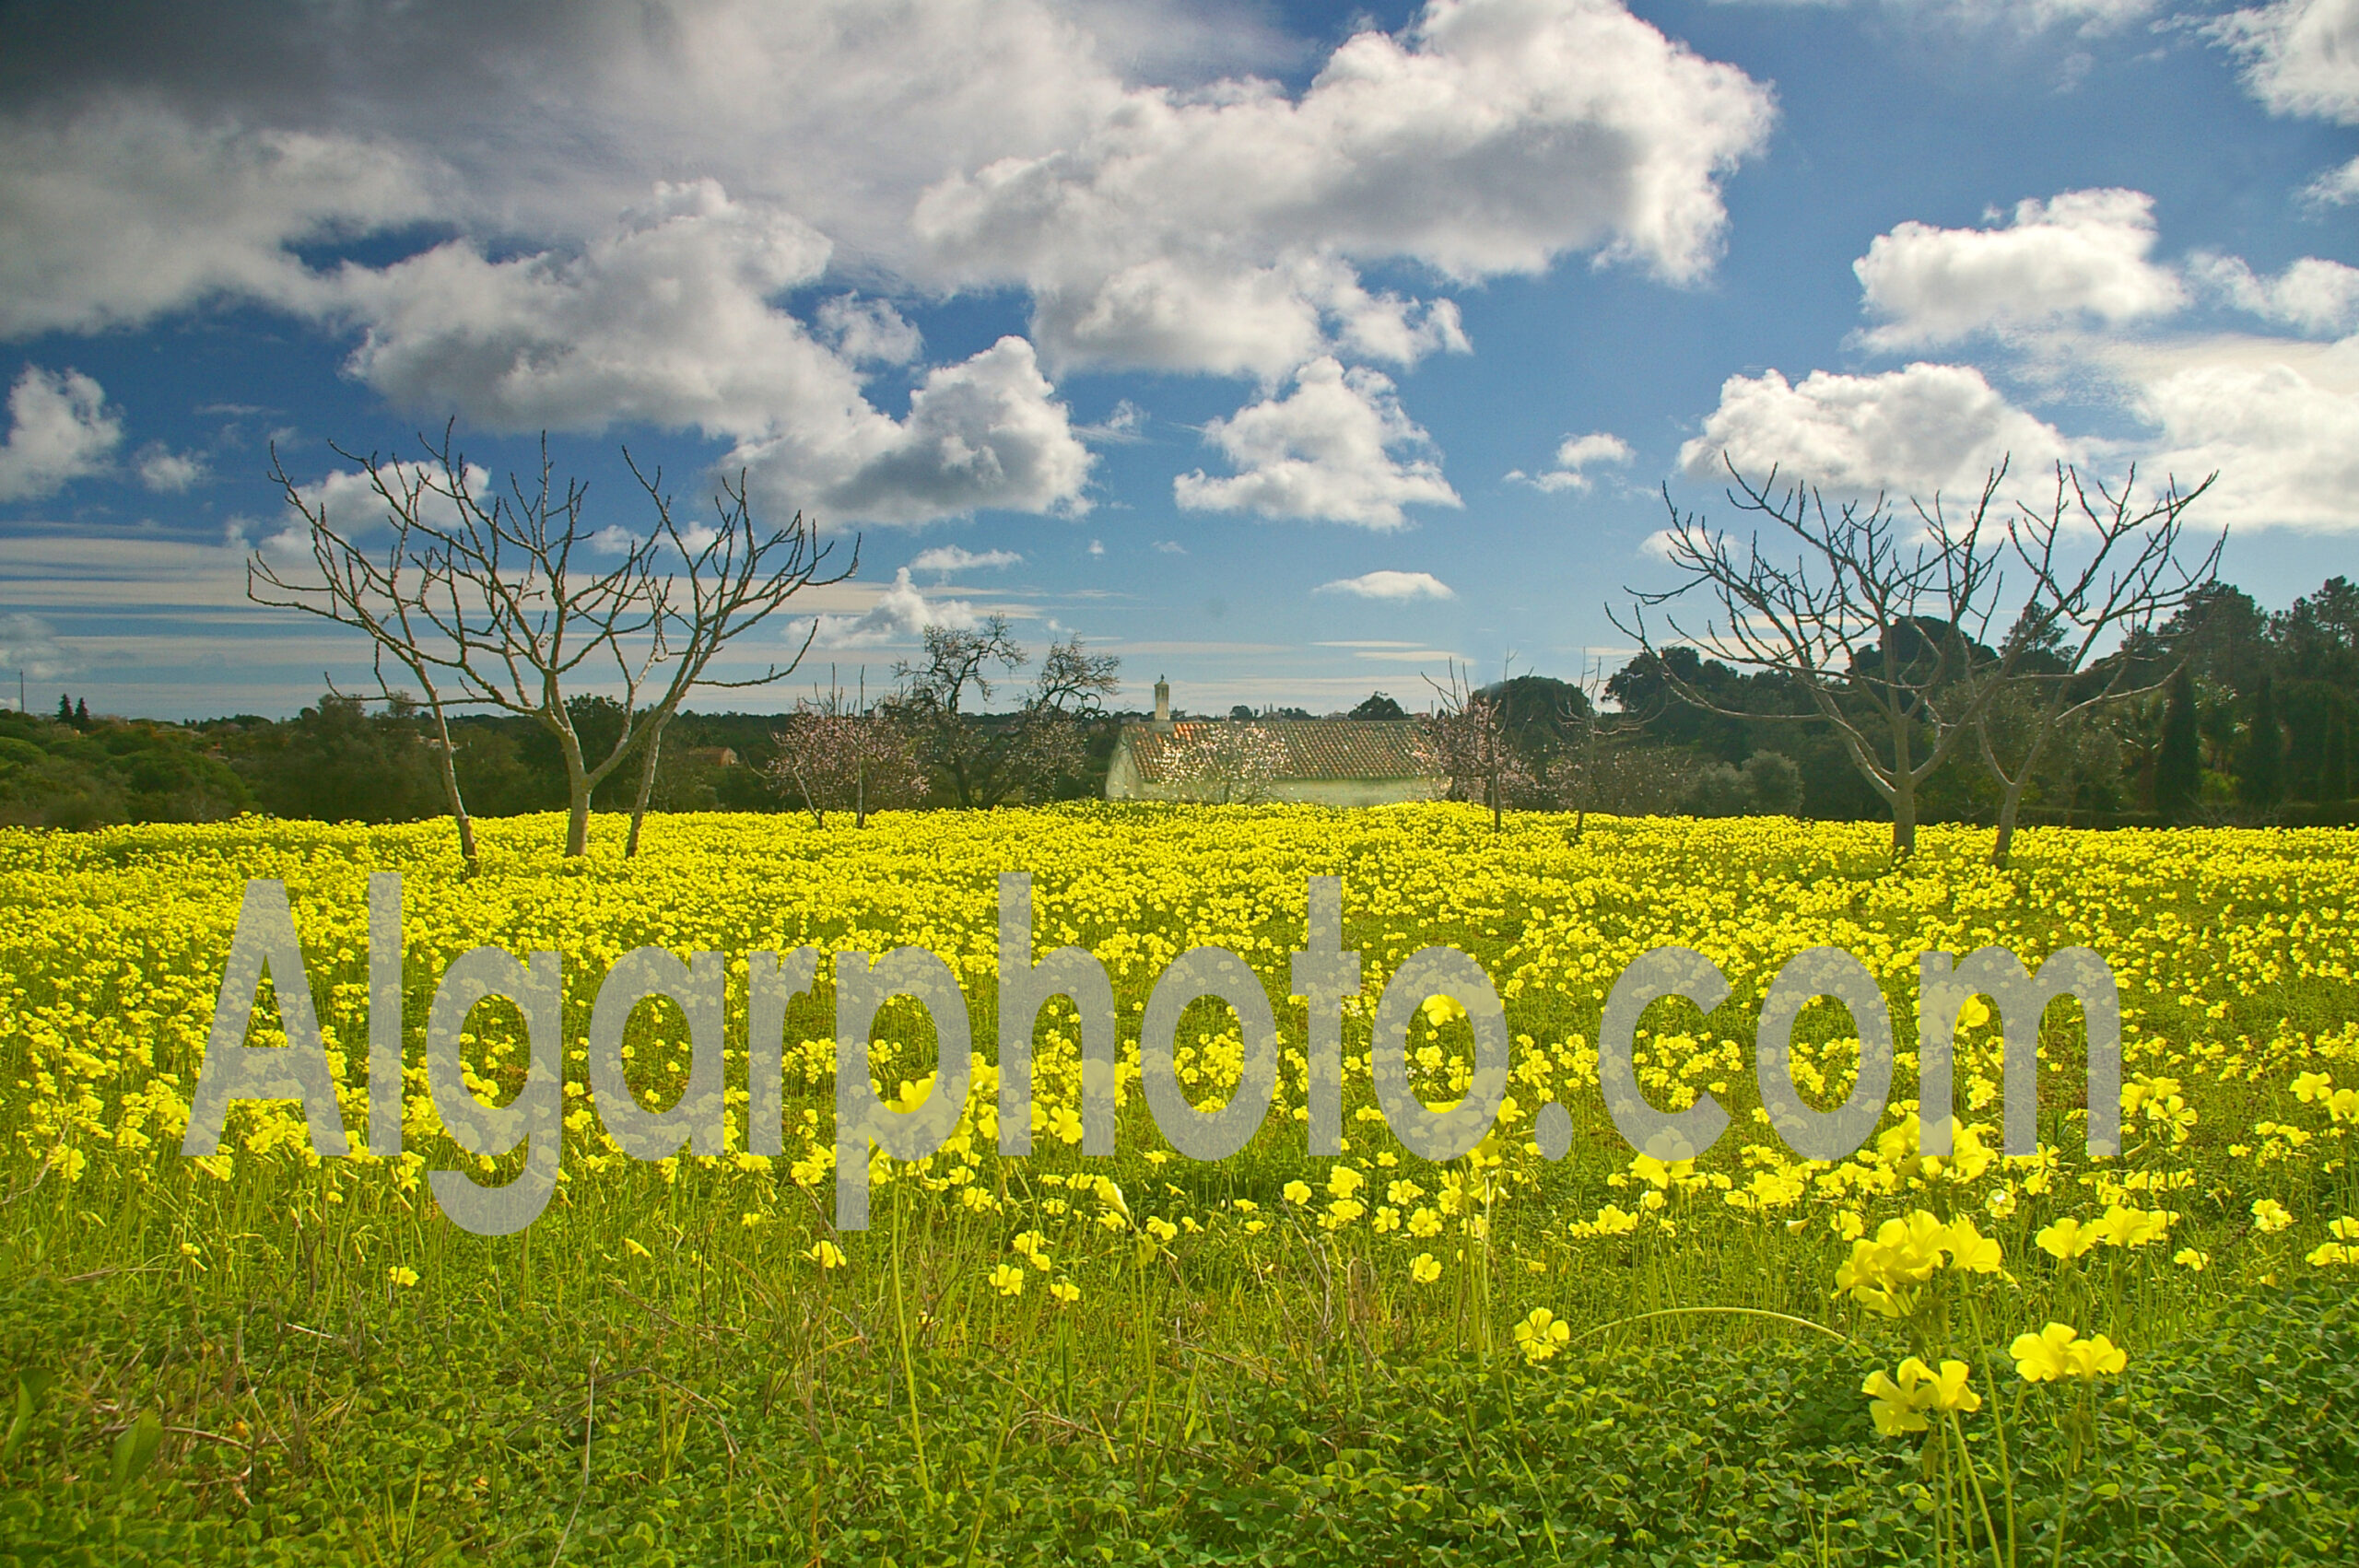 Algarve photography colour landscape image